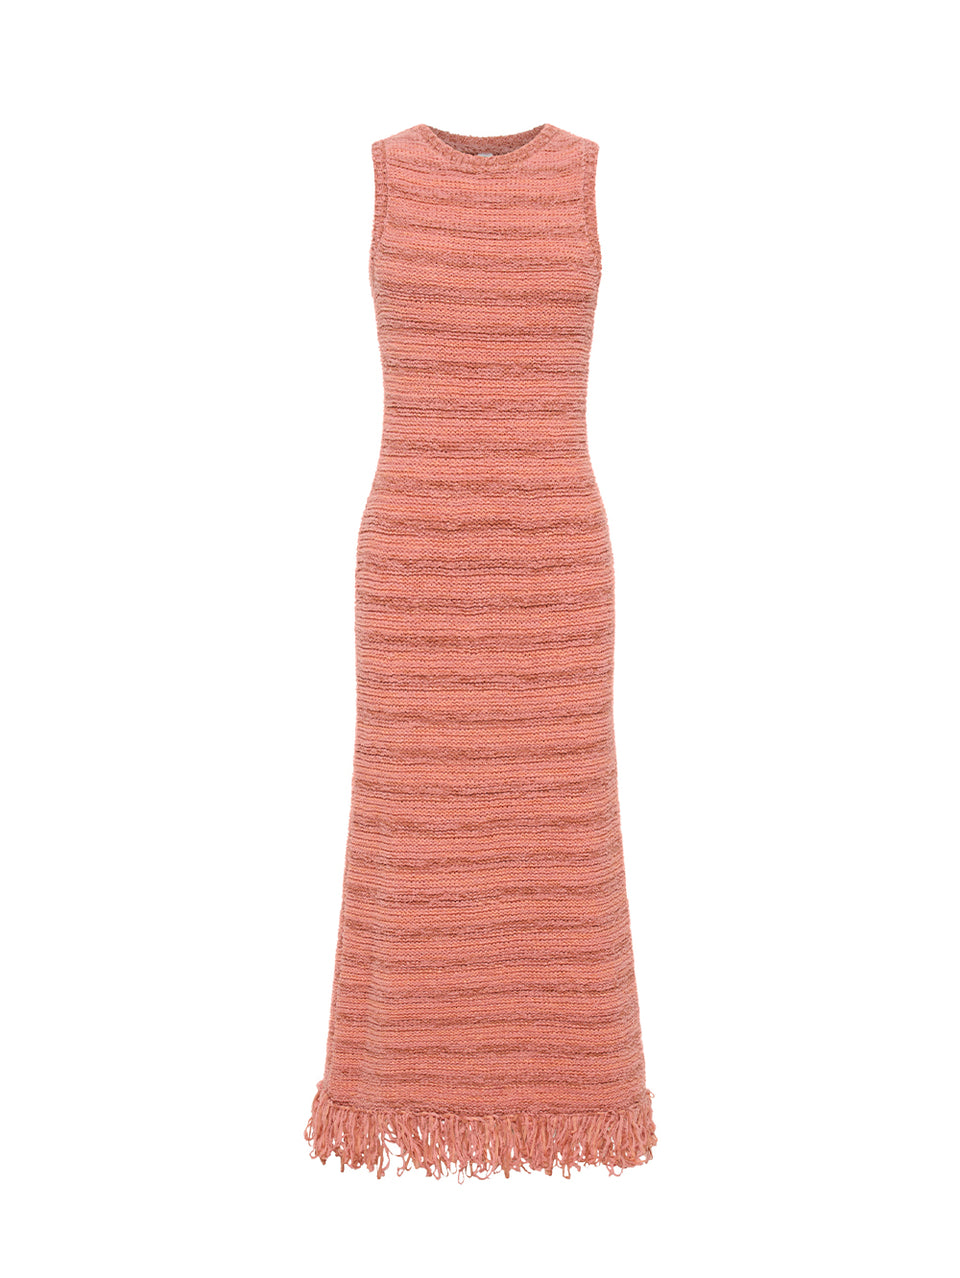 Luciana Knit Midi Dress Pink KIVARI | Pink knit midi dress